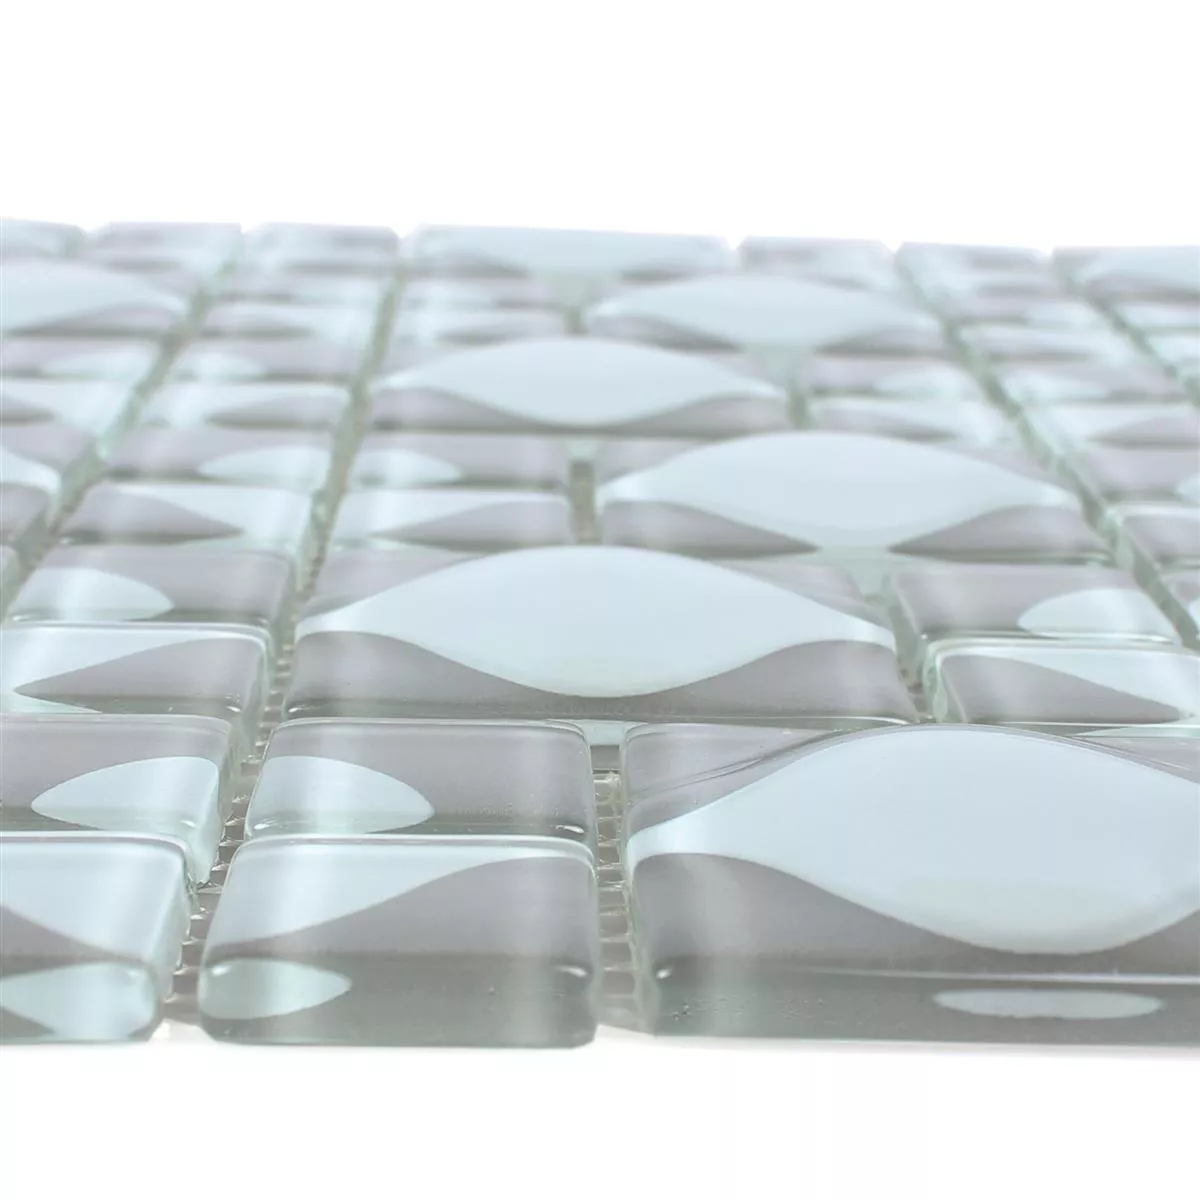 Próbka Mozaika Szklana Płytki Nokta Szary Biały 3D